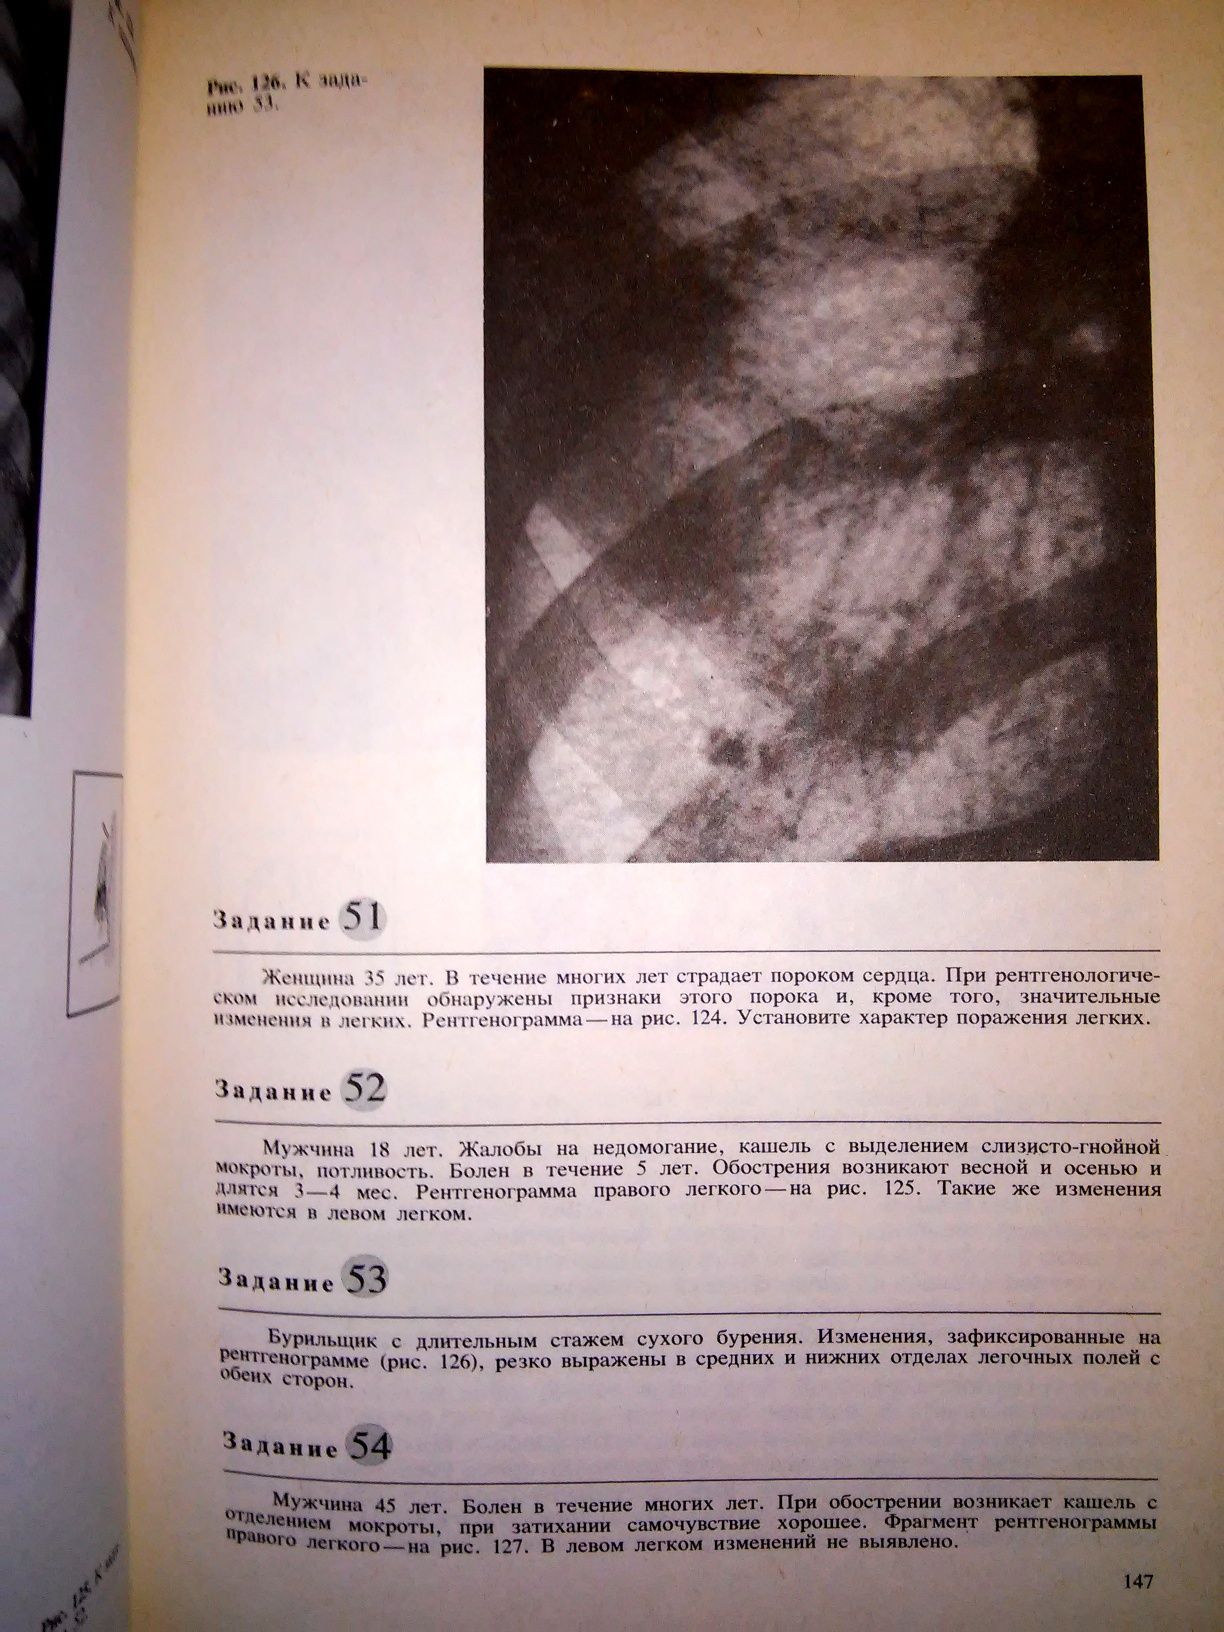 Линденбратен Медицинская рентгенология 1984